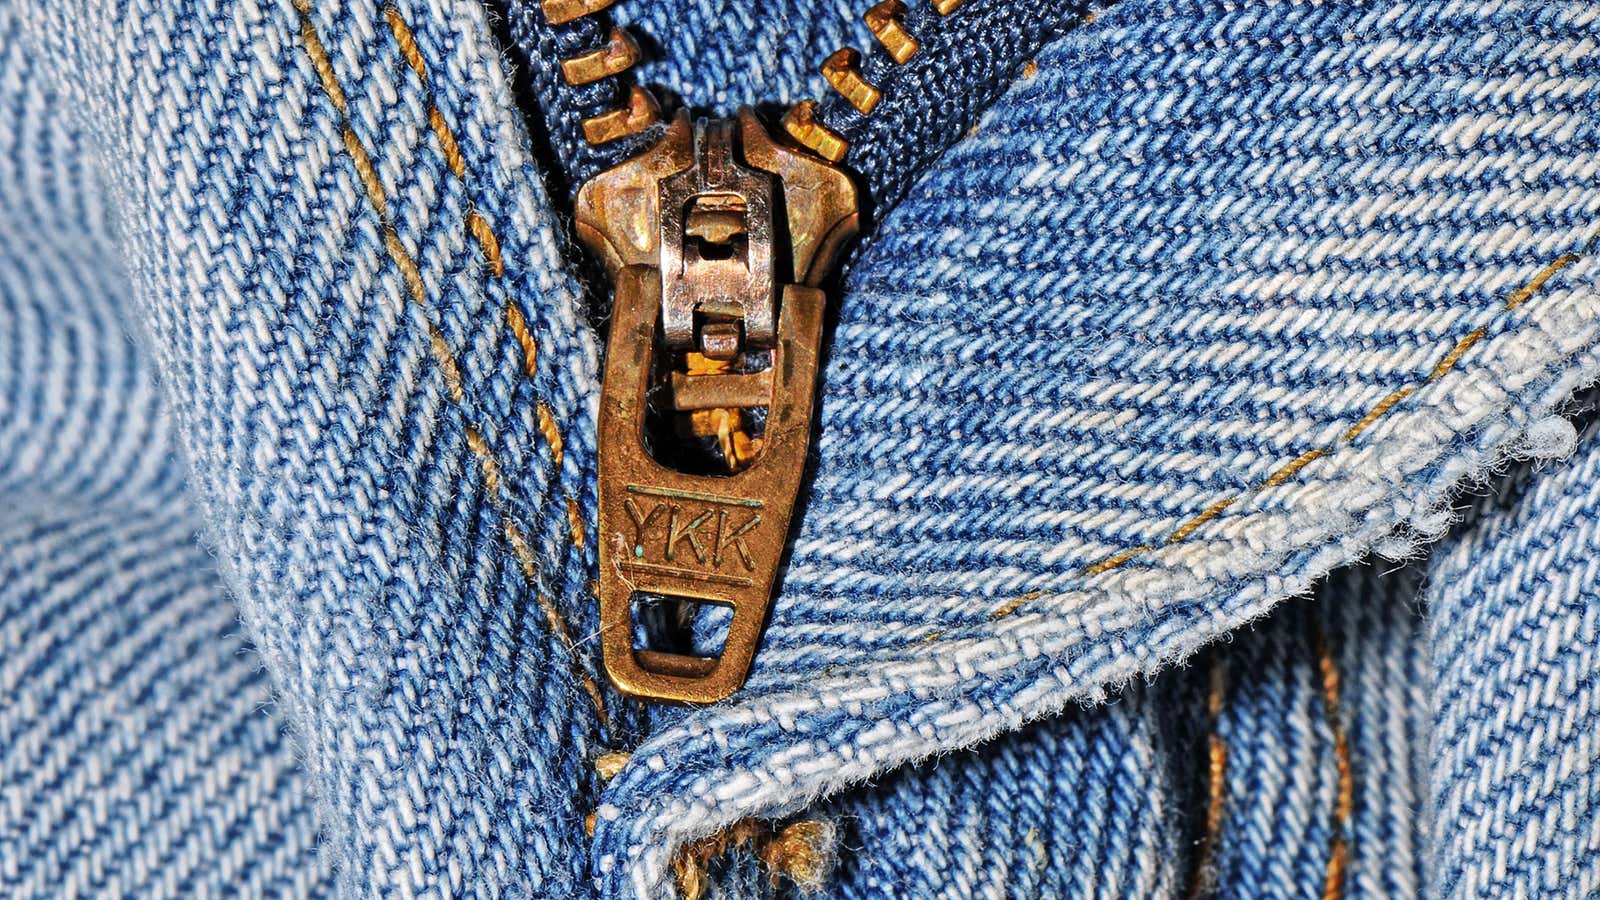 fix a zipper, fix a zipper Suppliers and Manufacturers at